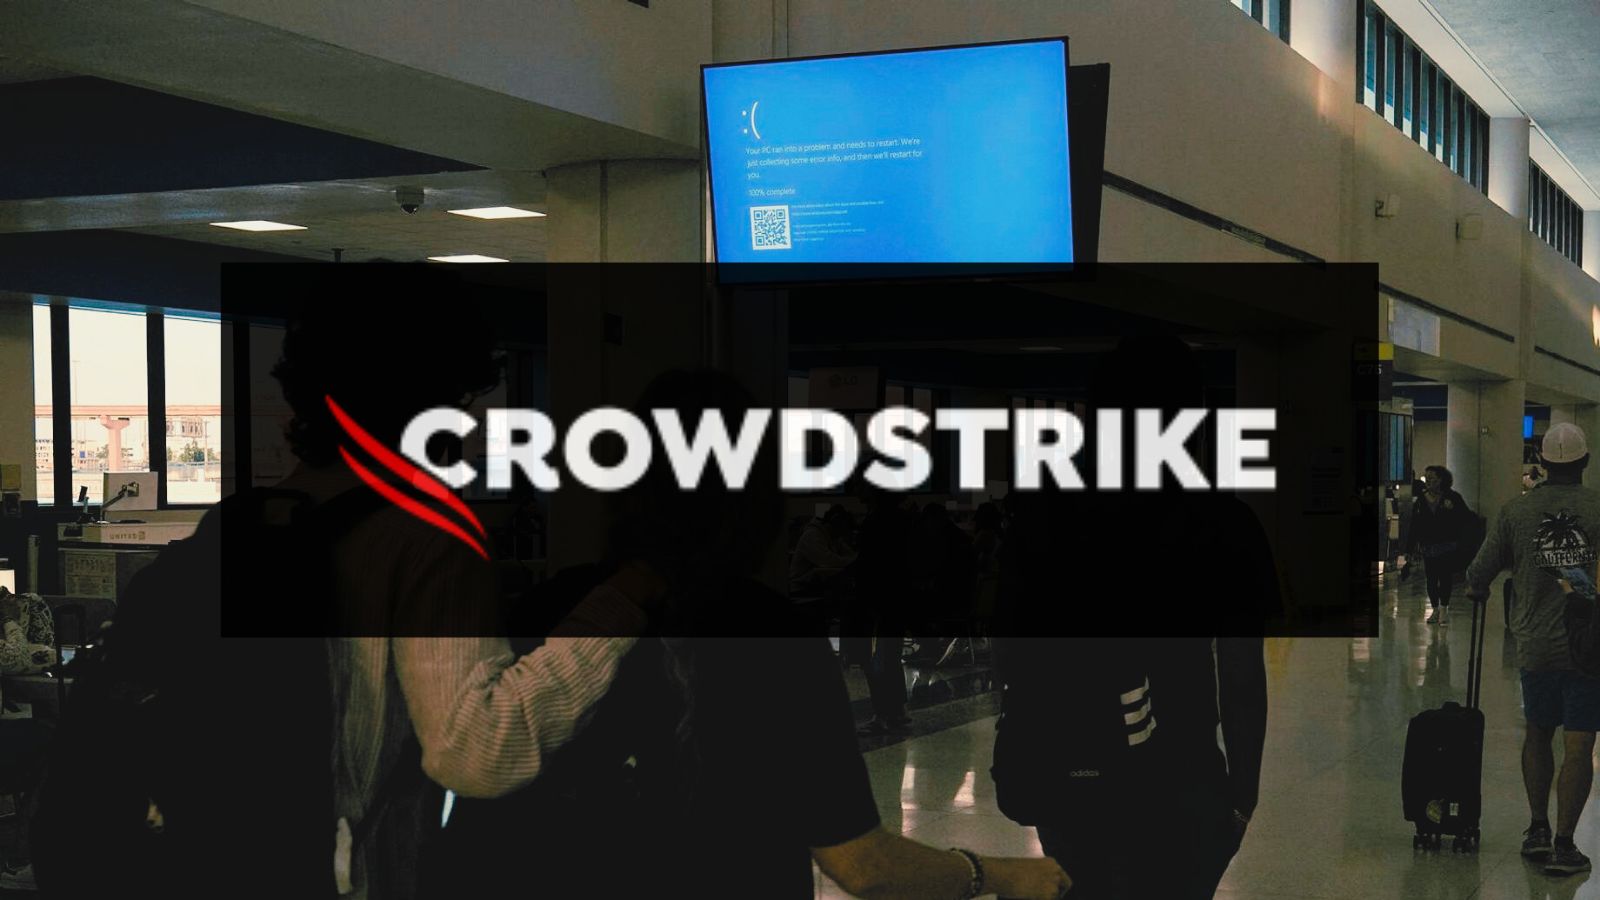 “Black out” i sistemeve të IT, Microsoft: Ndërprerja e CrowdStrike preku 8.5 milionë pajisje Windows!!